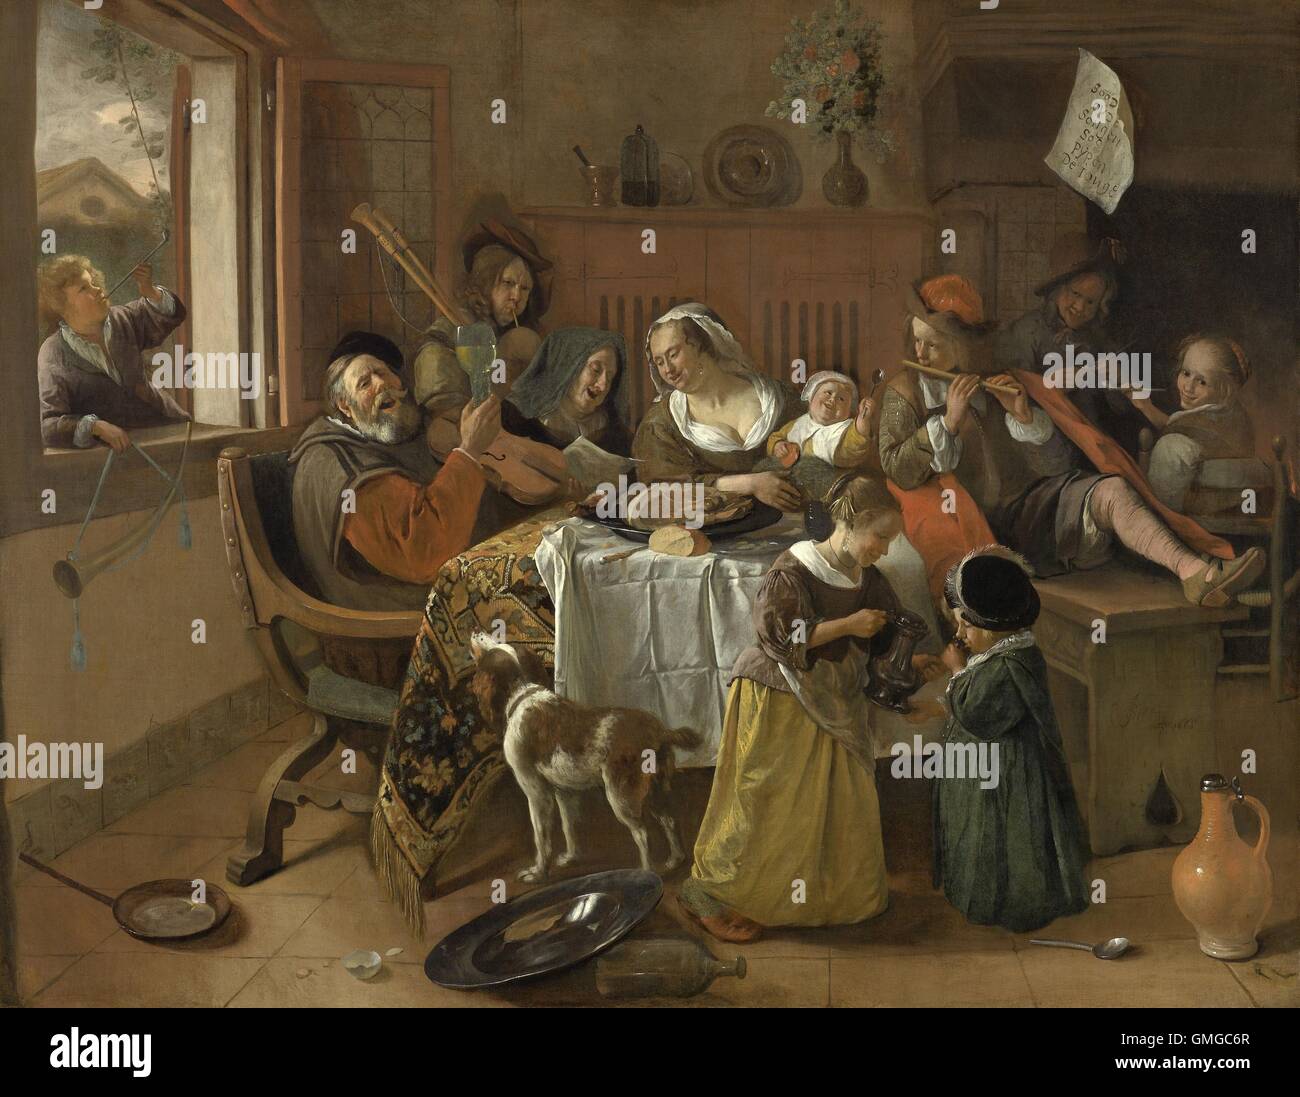 Die fröhliche Familie, Jan Steen, 1668, niederländische Malerei, Öl auf Leinwand. Der Vater singt bei gleichzeitiger Erhöhung von Glas und die Mutter und Großmutter mitmachen. Die Kinder sind entweder ein Blasinstrument hineinblasen oder eine lange Pfeife rauchen oder trinken. Eine moralisierende Note hängt an dem Mantel, "wie die alten singen, so soll die junge Twitter" (BSLOC_2016_3_165) Stockfoto